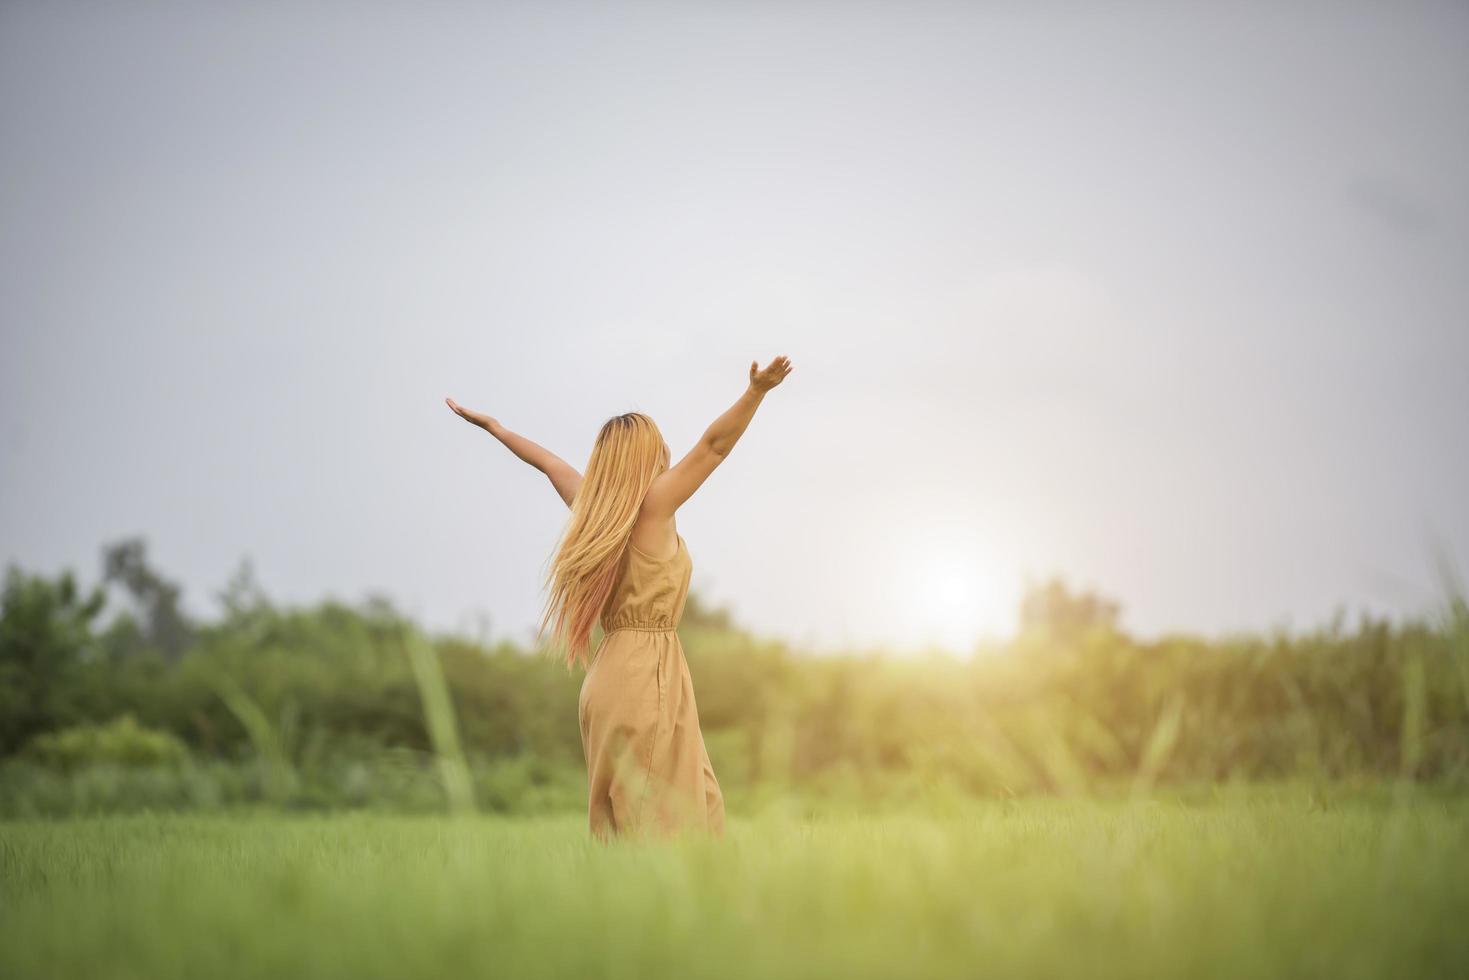 jonge vrouw die in grasveld staat en handen in de lucht steekt. foto